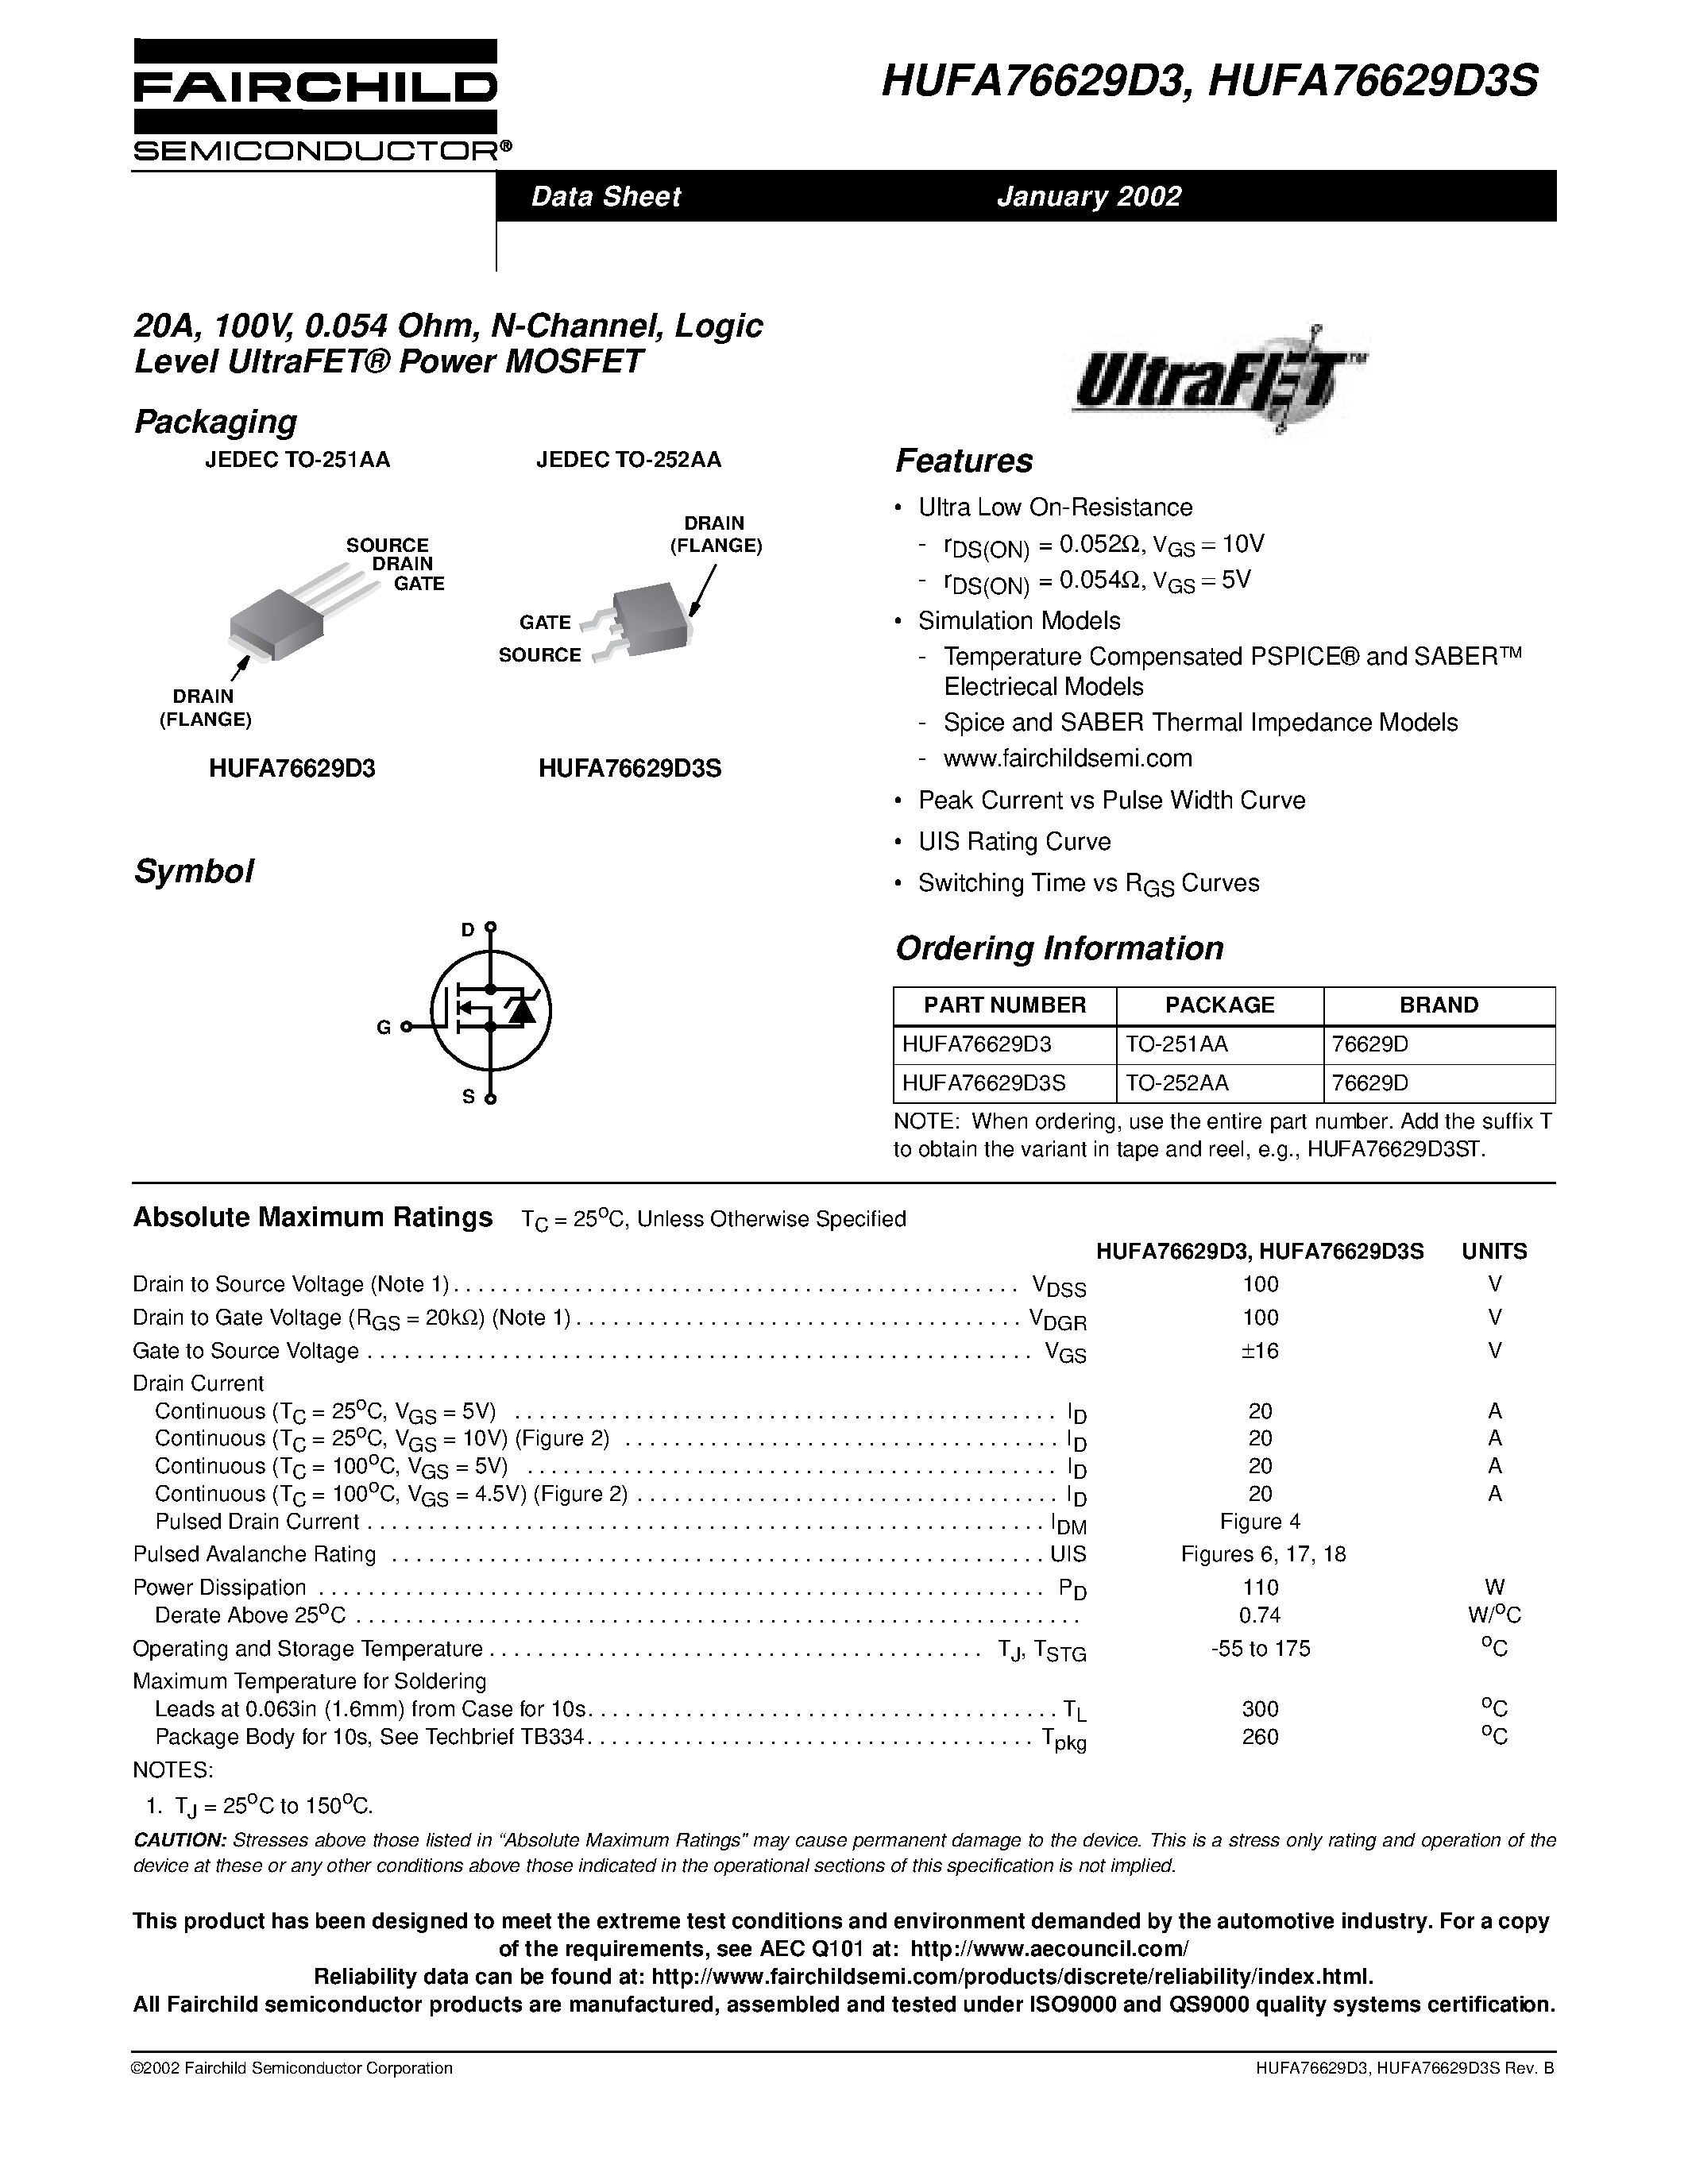 Даташит HUFA76629D3S - 20A/ 100V/ 0.054 Ohm/ N-Channel/ Logic Level UltraFET Power MOSFET страница 1